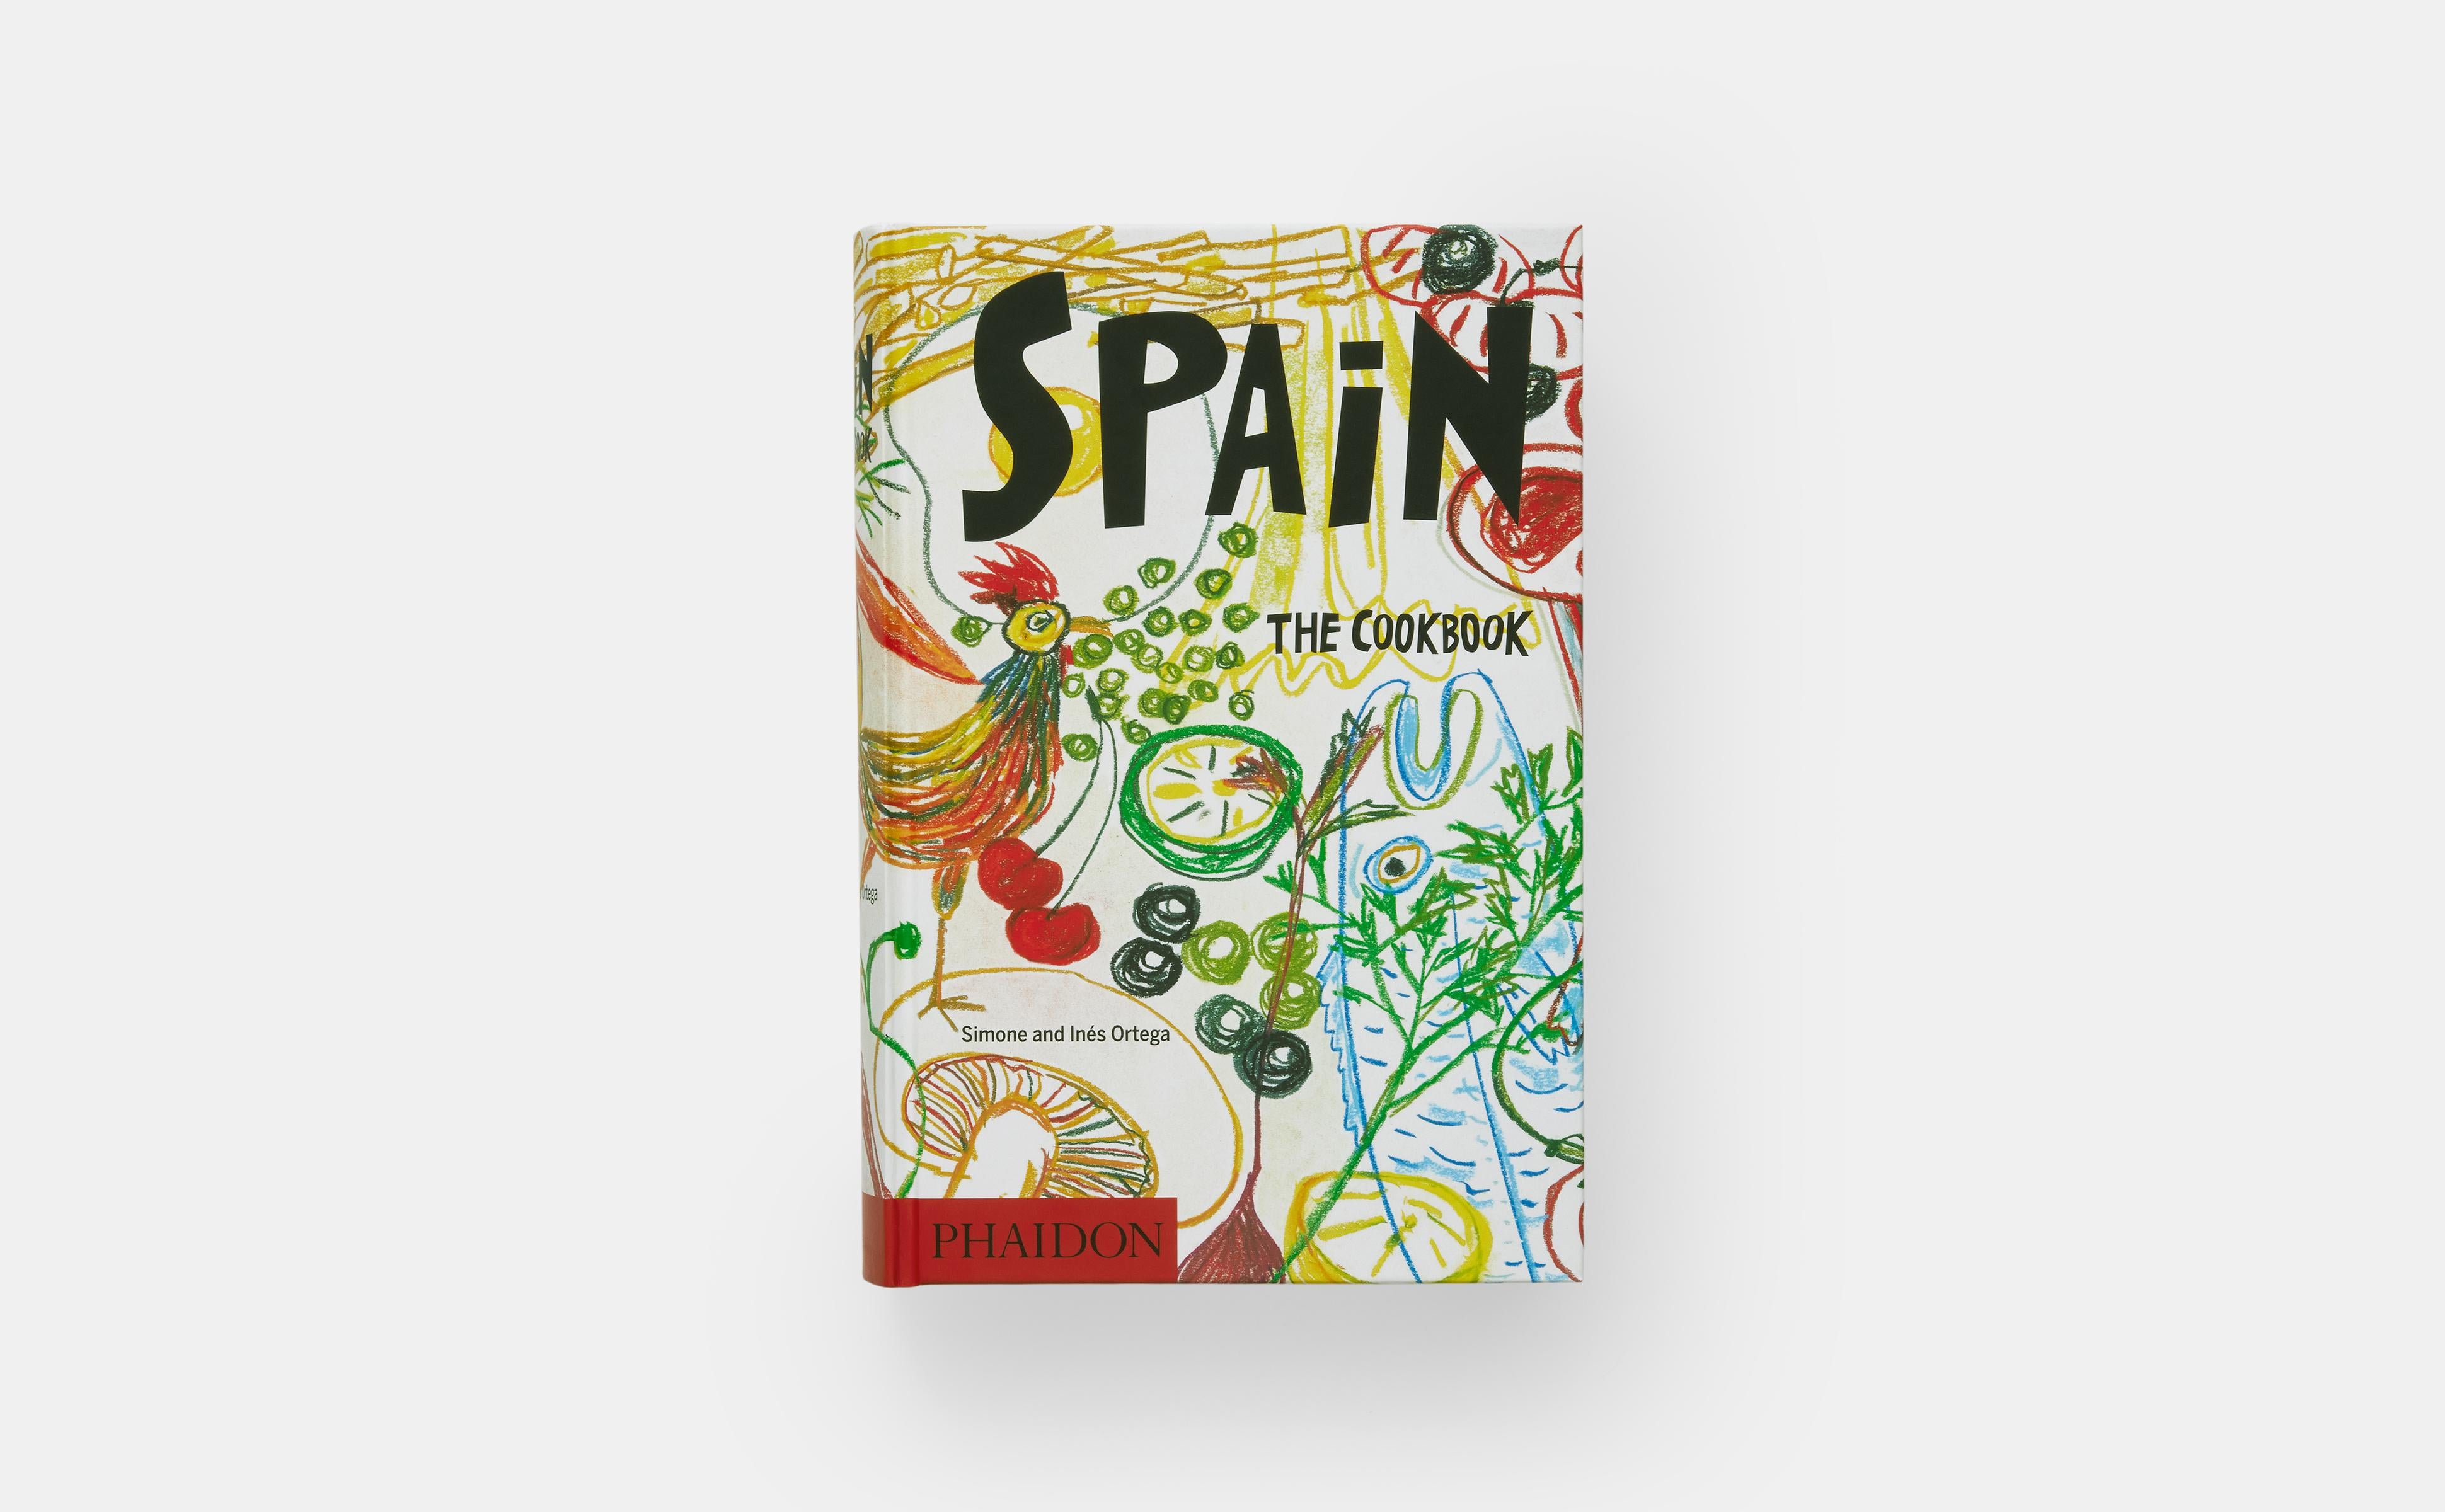 Le best-seller de la cuisine espagnole traditionnelle et authentique, avec 1 080 recettes faciles à suivre.

Depuis sa première publication il y a plus de 40 ans, les cuisiniers espagnols font confiance à ce compagnon traditionnel de la cuisine